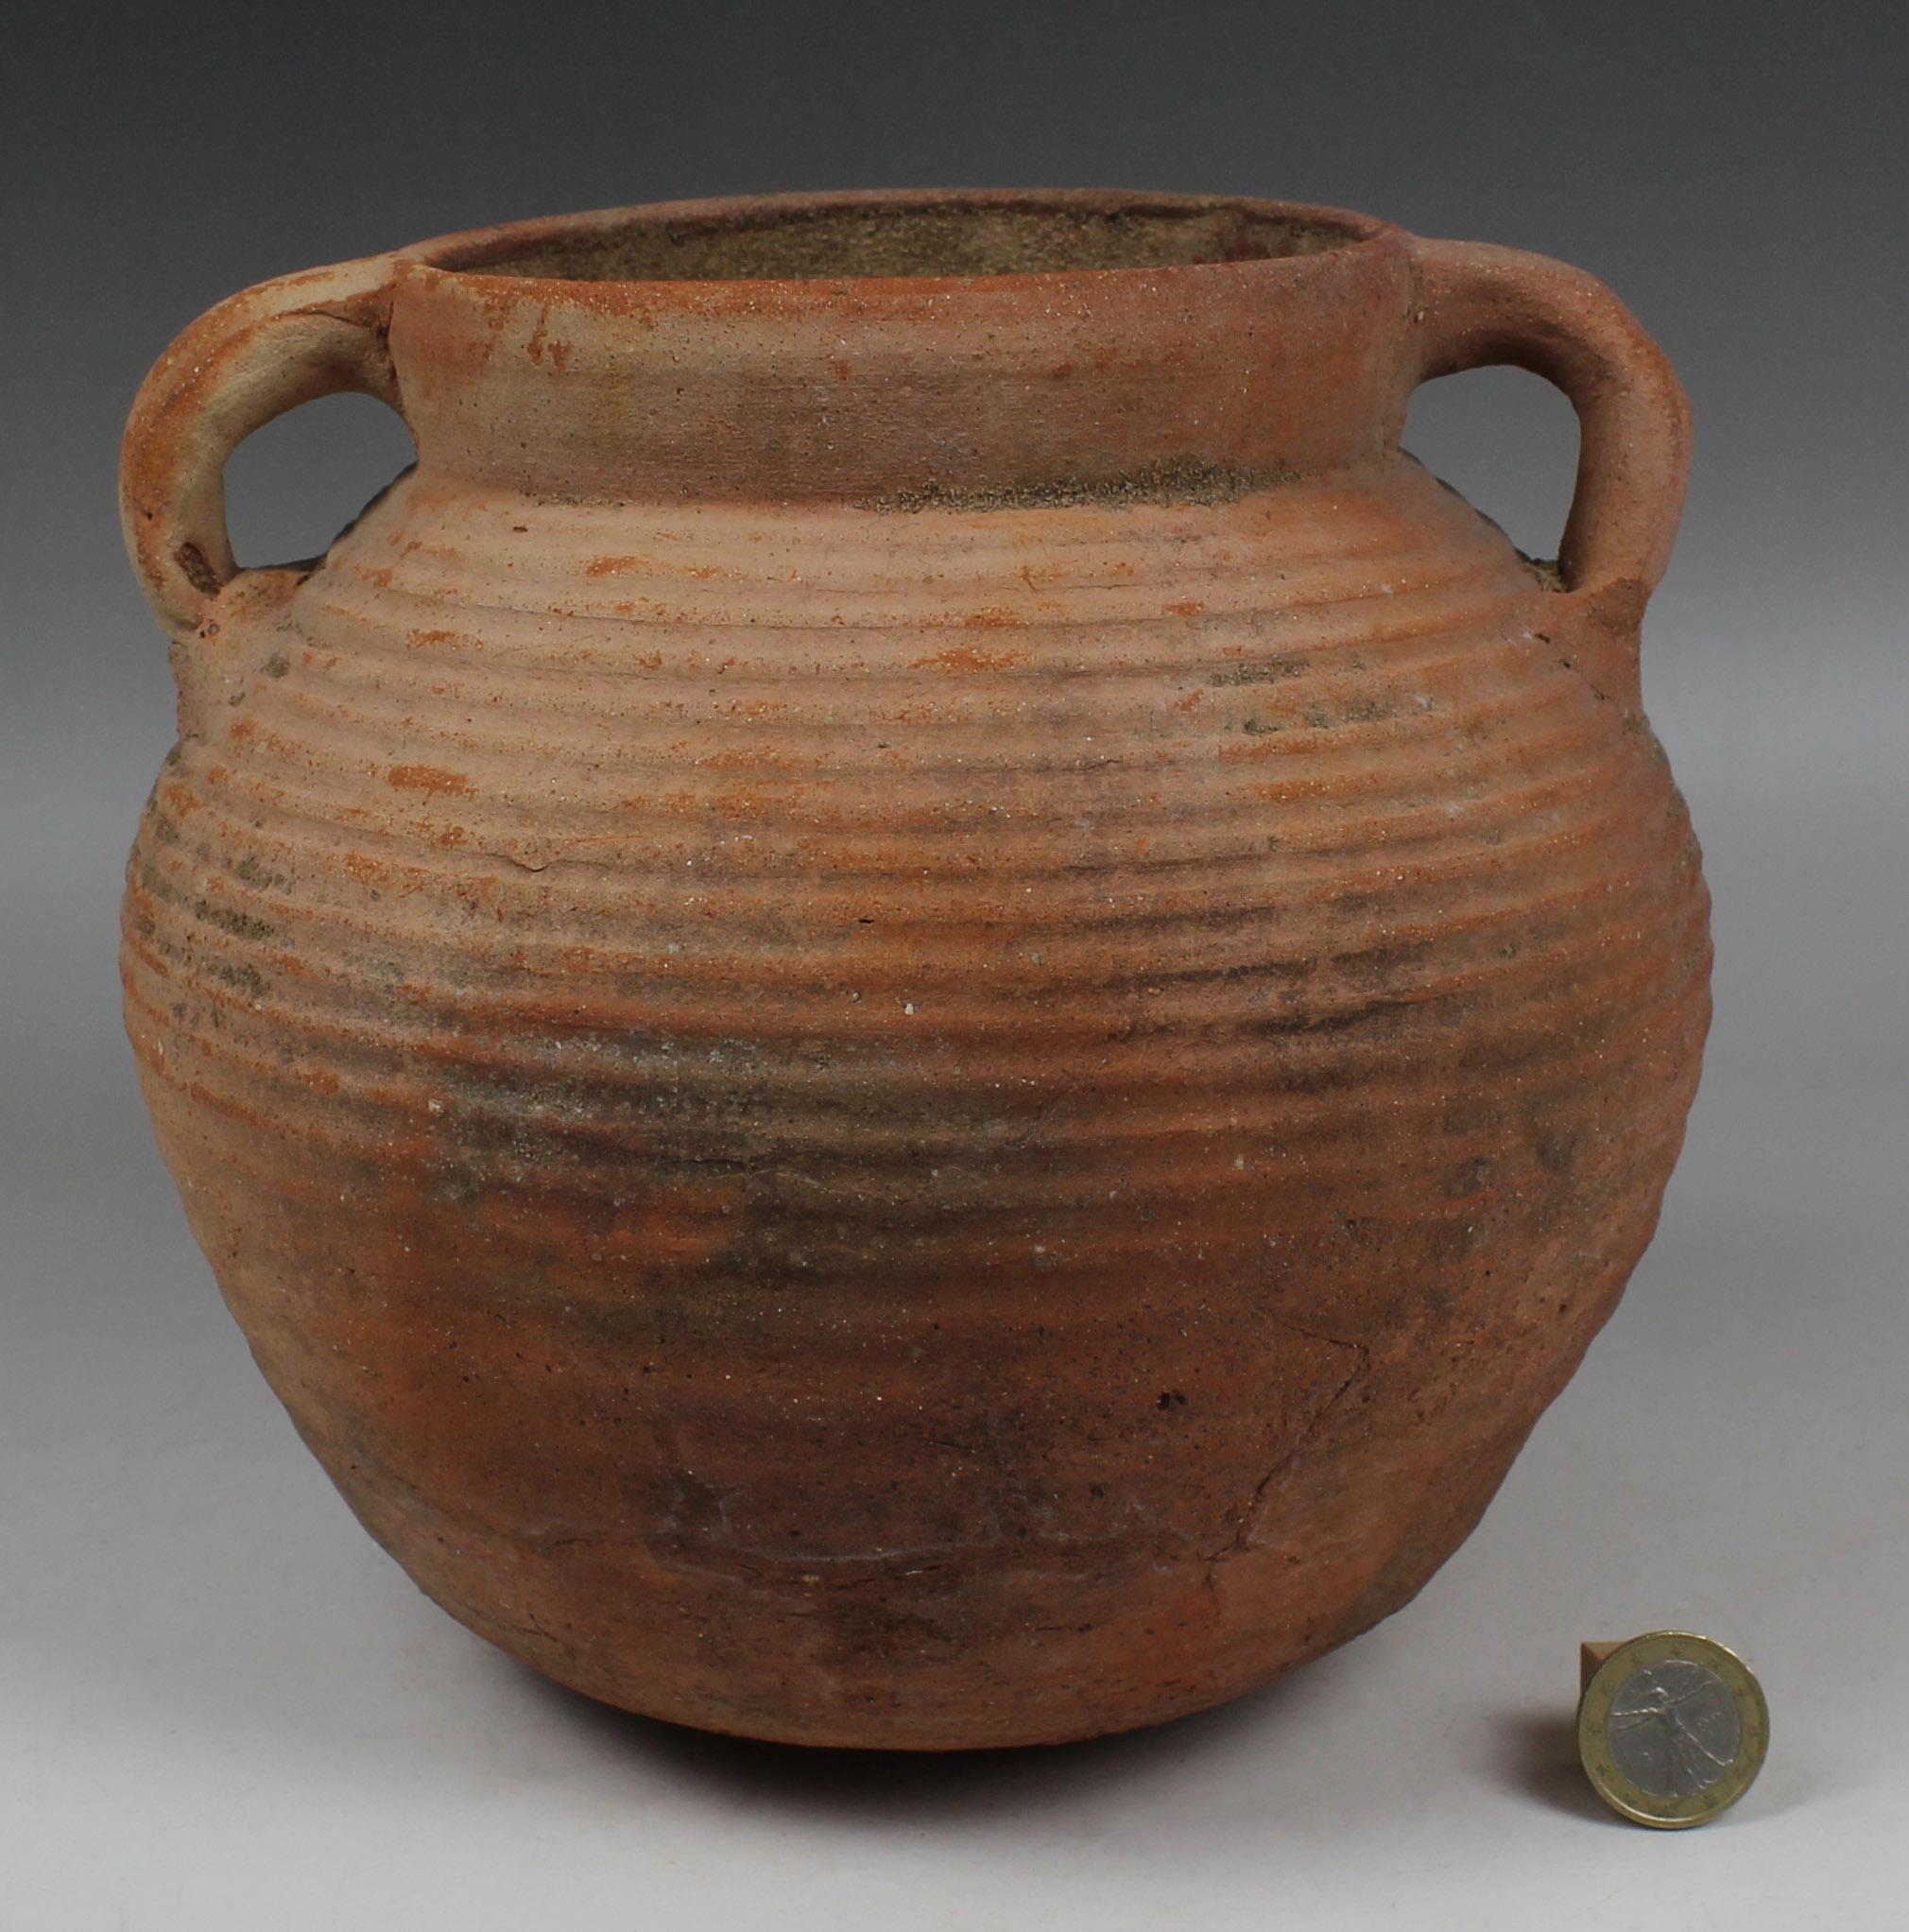 Classical Roman Roman cooking pot, Type ‘Kedera’